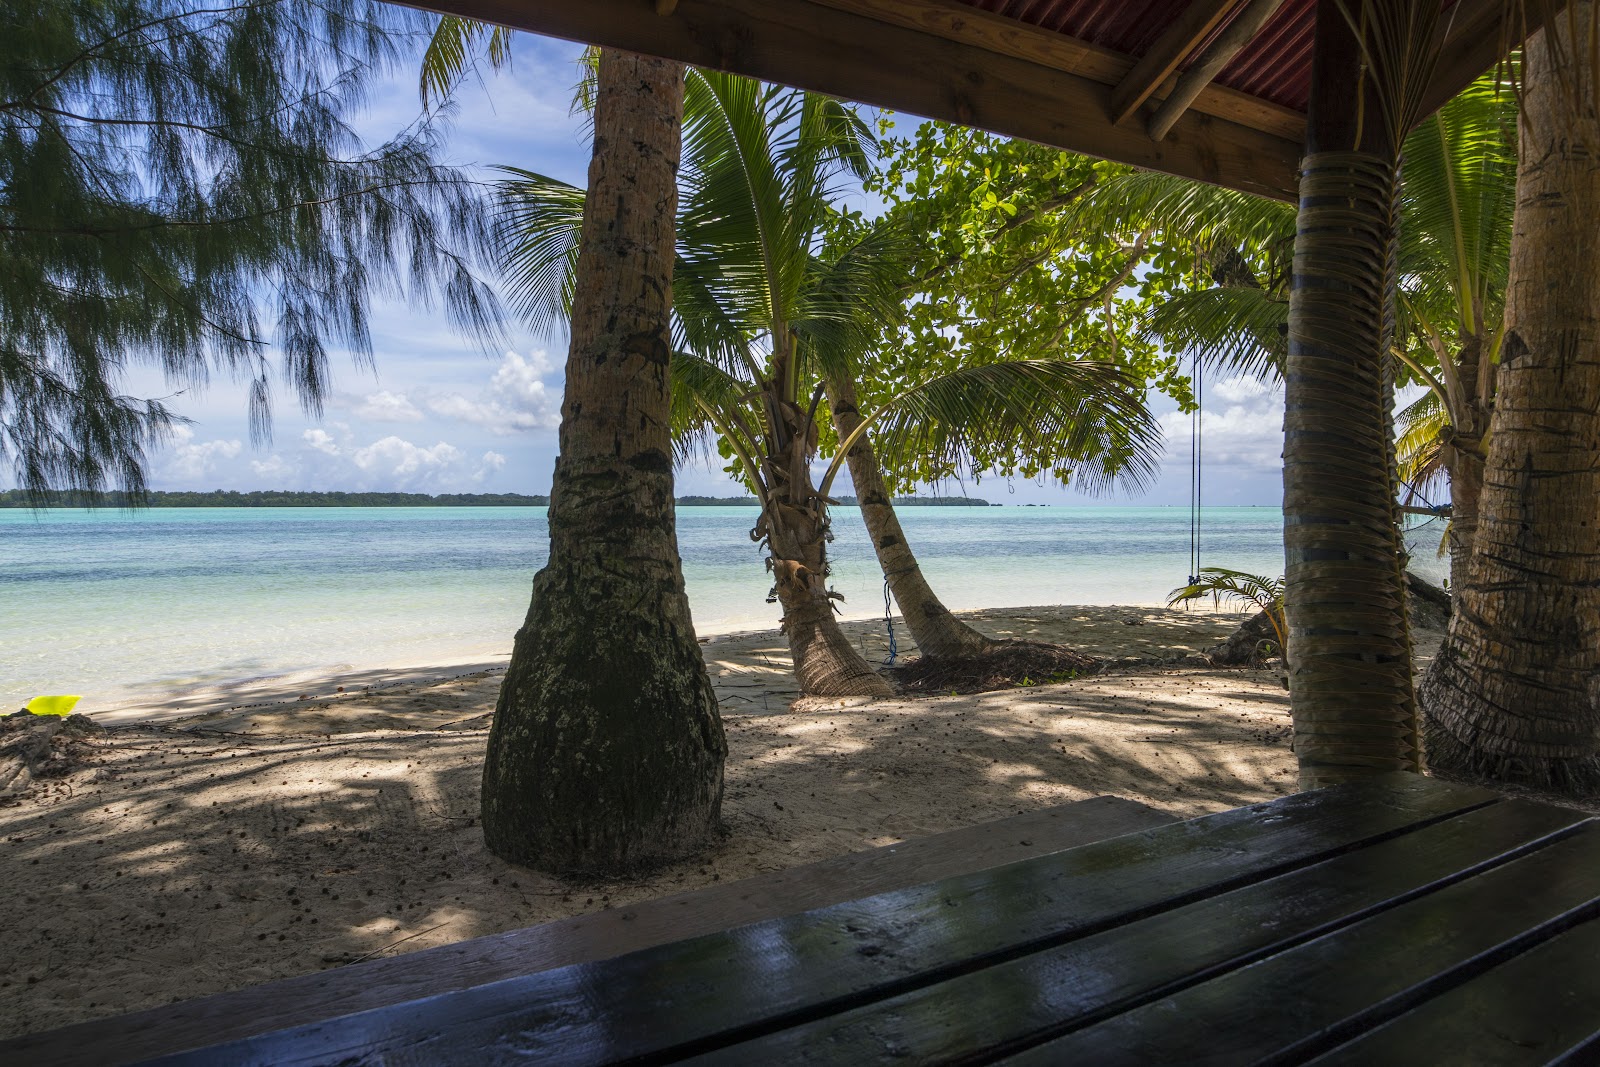 Foto de Carp Island Resort - lugar popular entre los conocedores del relax